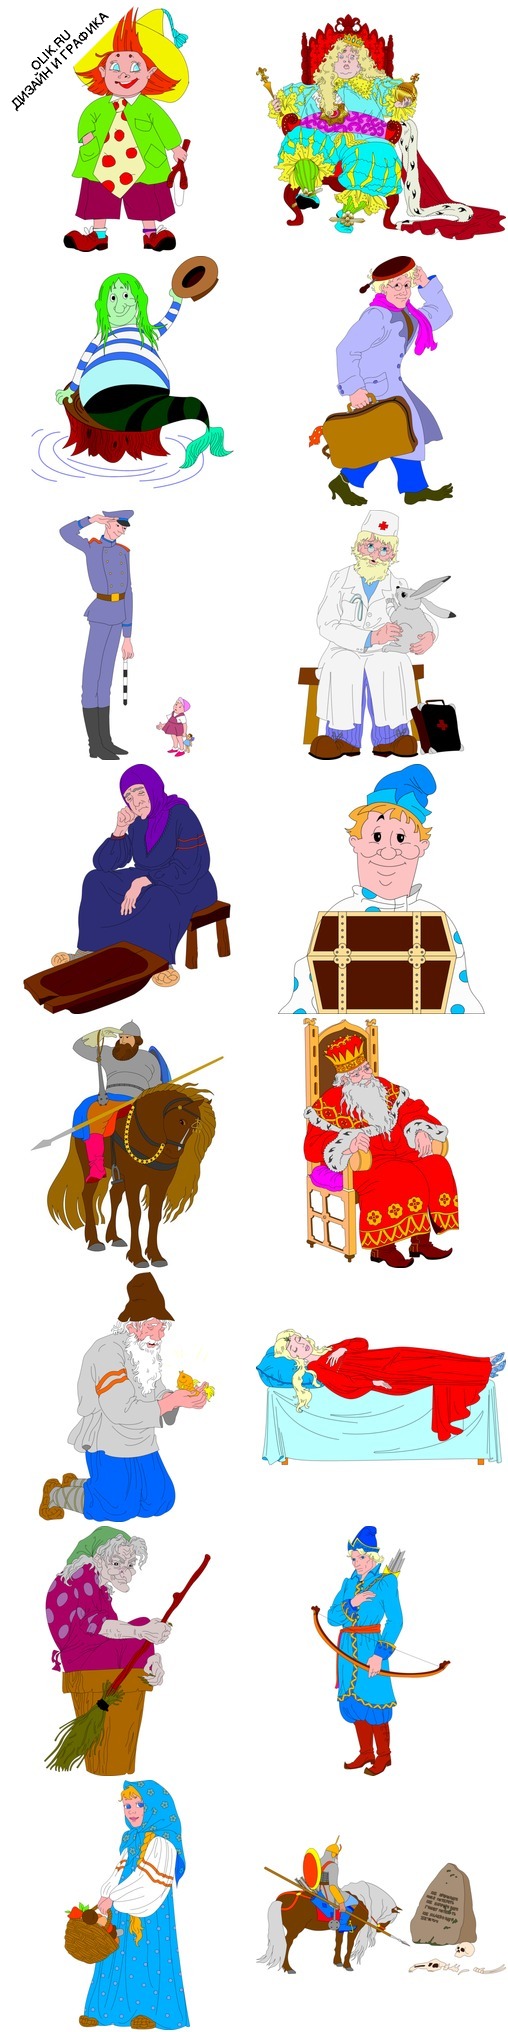 Картинки - нарисованные герои русских народных сказок